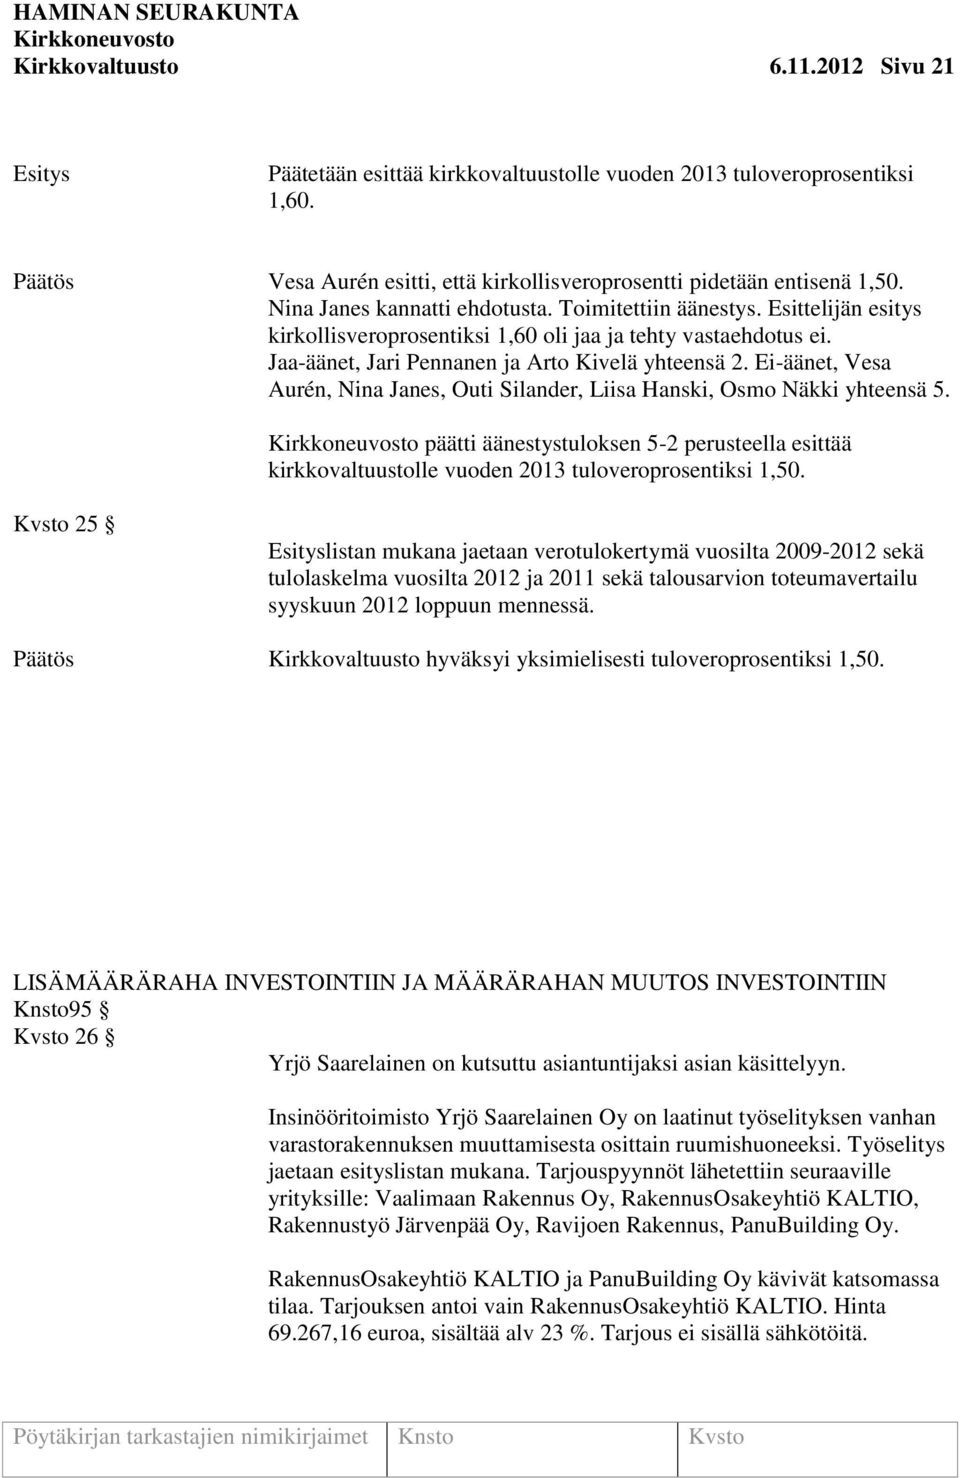 Ei-äänet, Vesa Aurén, Nina Janes, Outi Silander, Liisa Hanski, Osmo Näkki yhteensä 5. päätti äänestystuloksen 5-2 perusteella esittää kirkkovaltuustolle vuoden 2013 tuloveroprosentiksi 1,50.